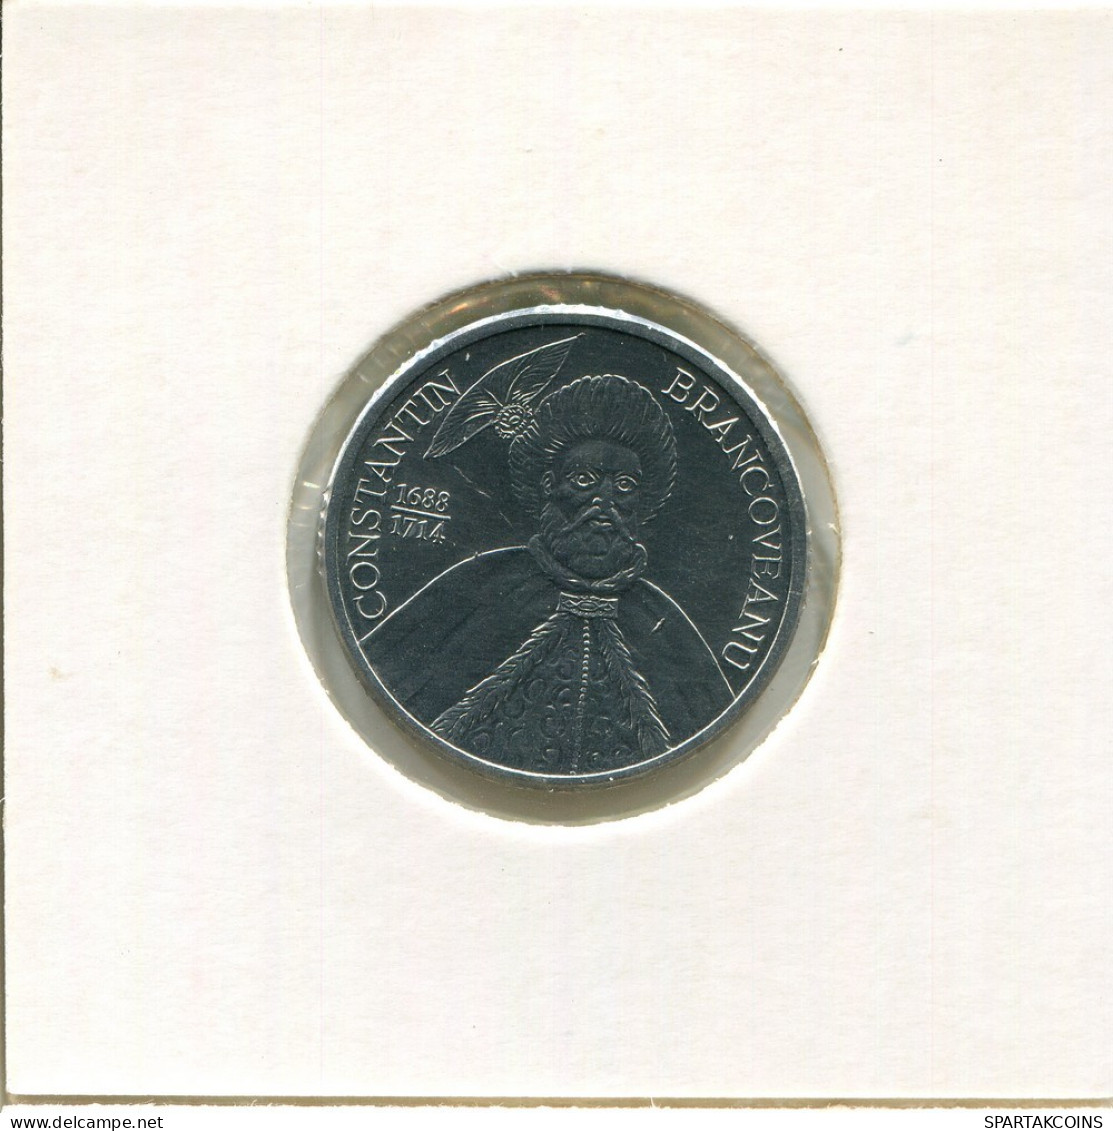 1000 LEI 2002 RUMÄNIEN ROMANIA Münze #AP699.2.D.A - Roemenië